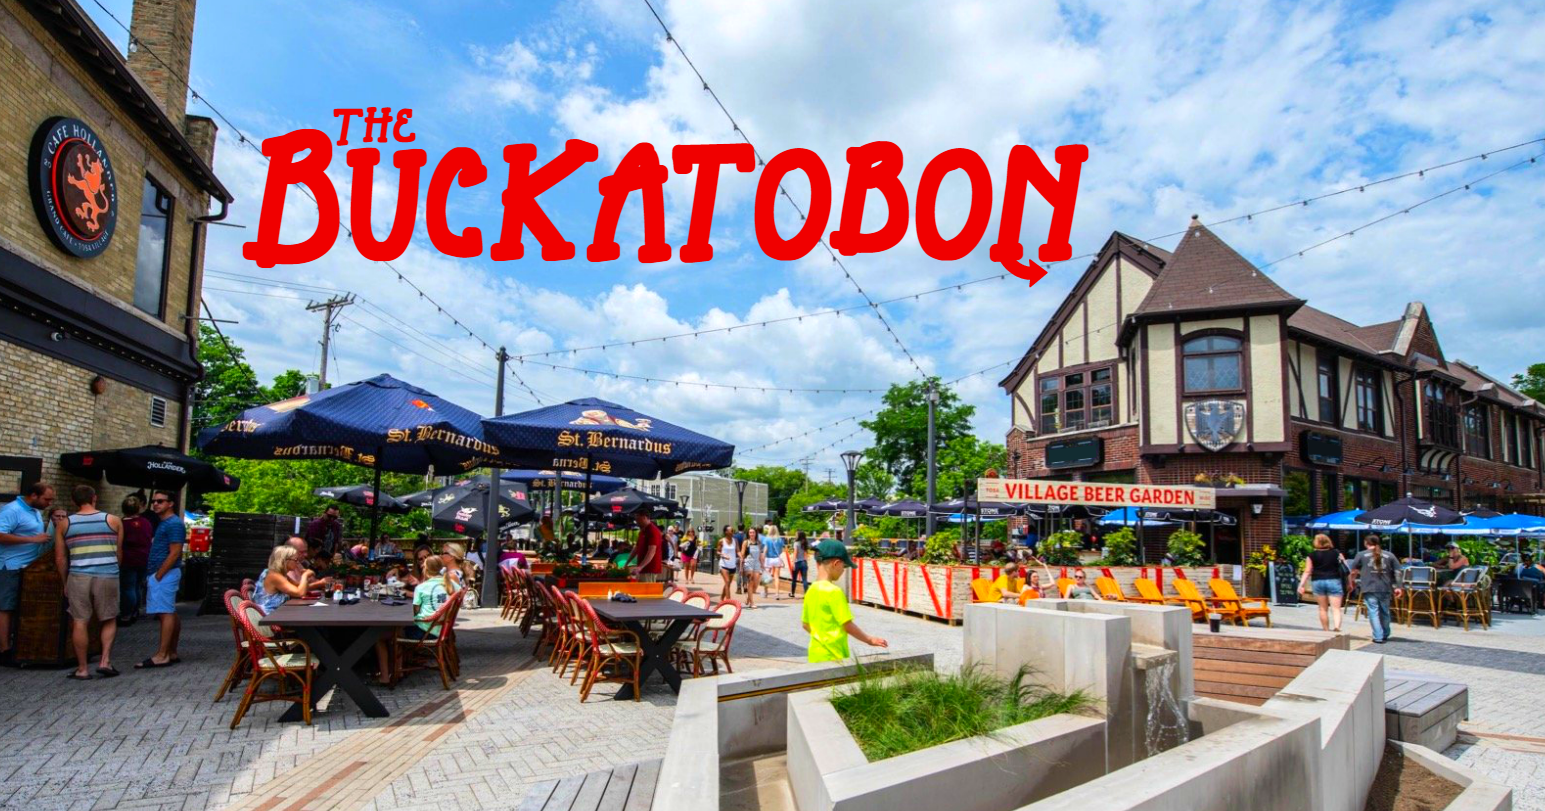 The Buckatobon Milwaukee